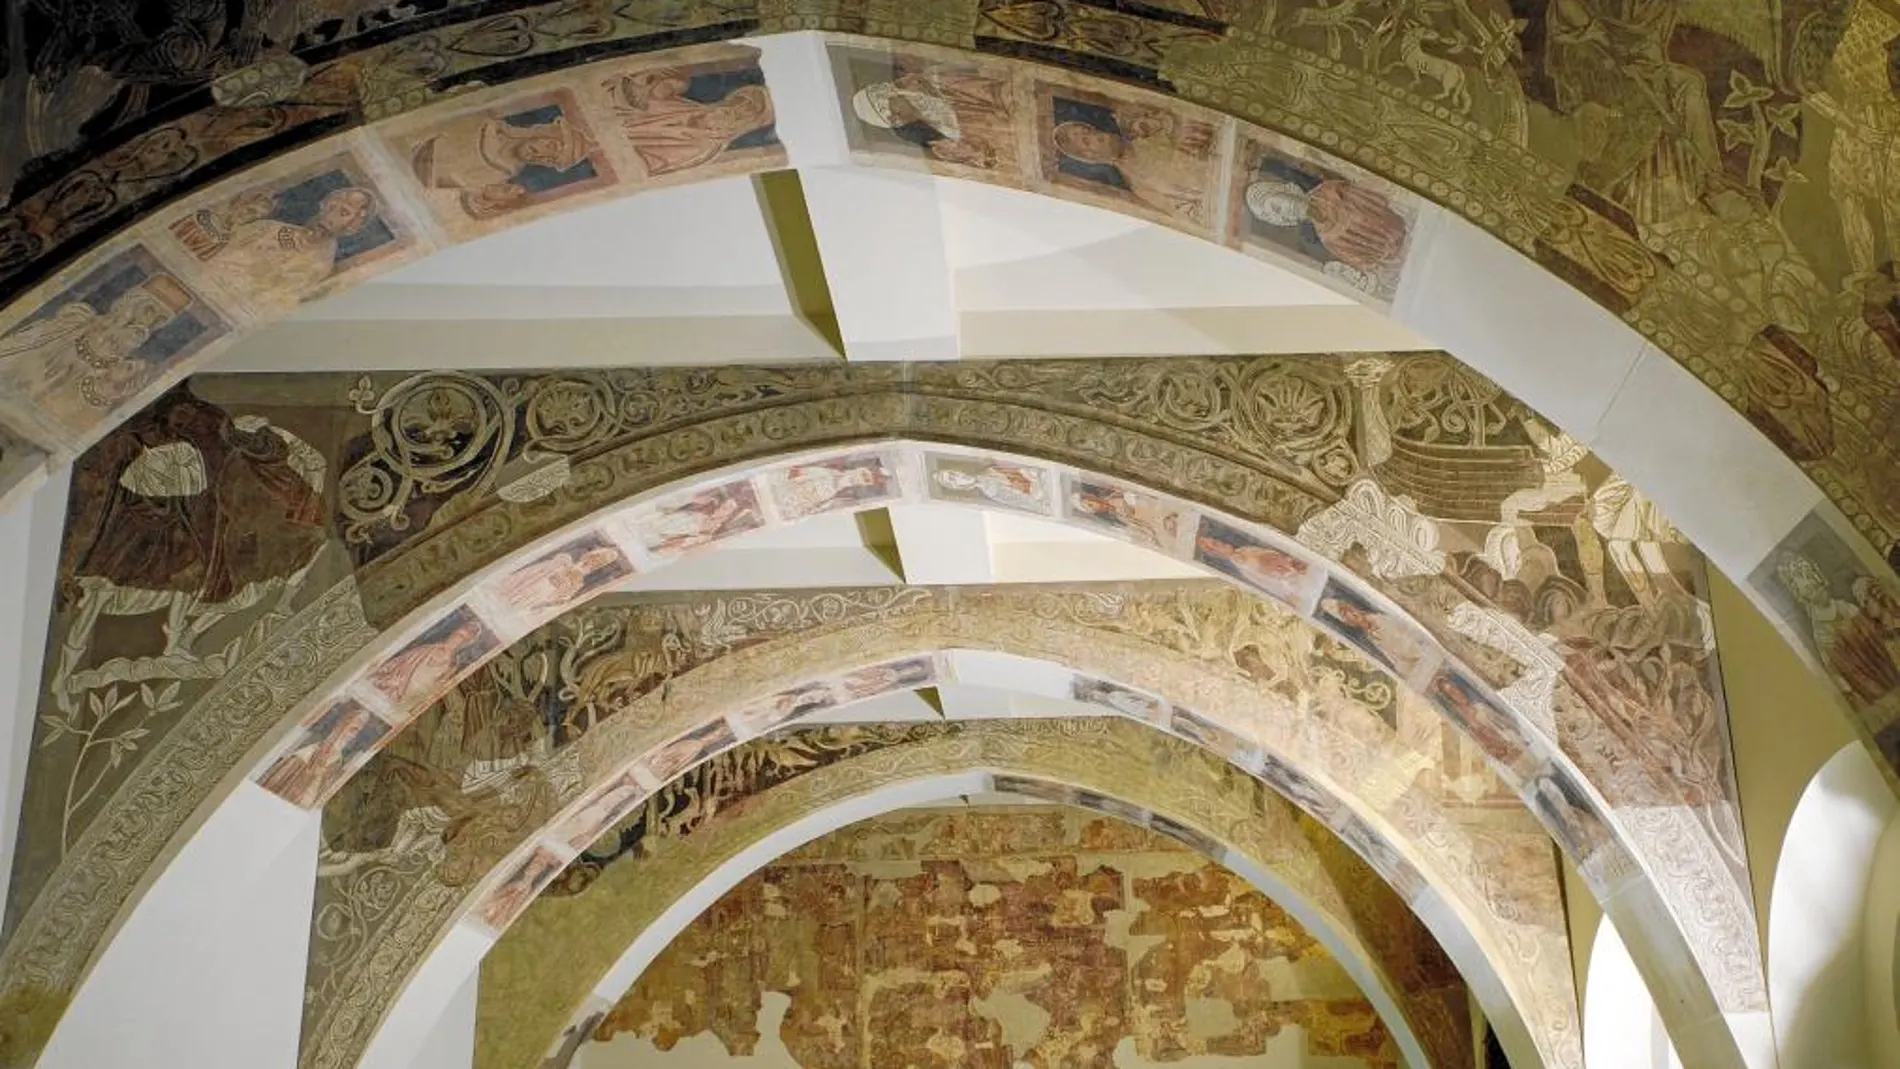 Las pinturas conservadas en el Mnac y ahora reclamadas